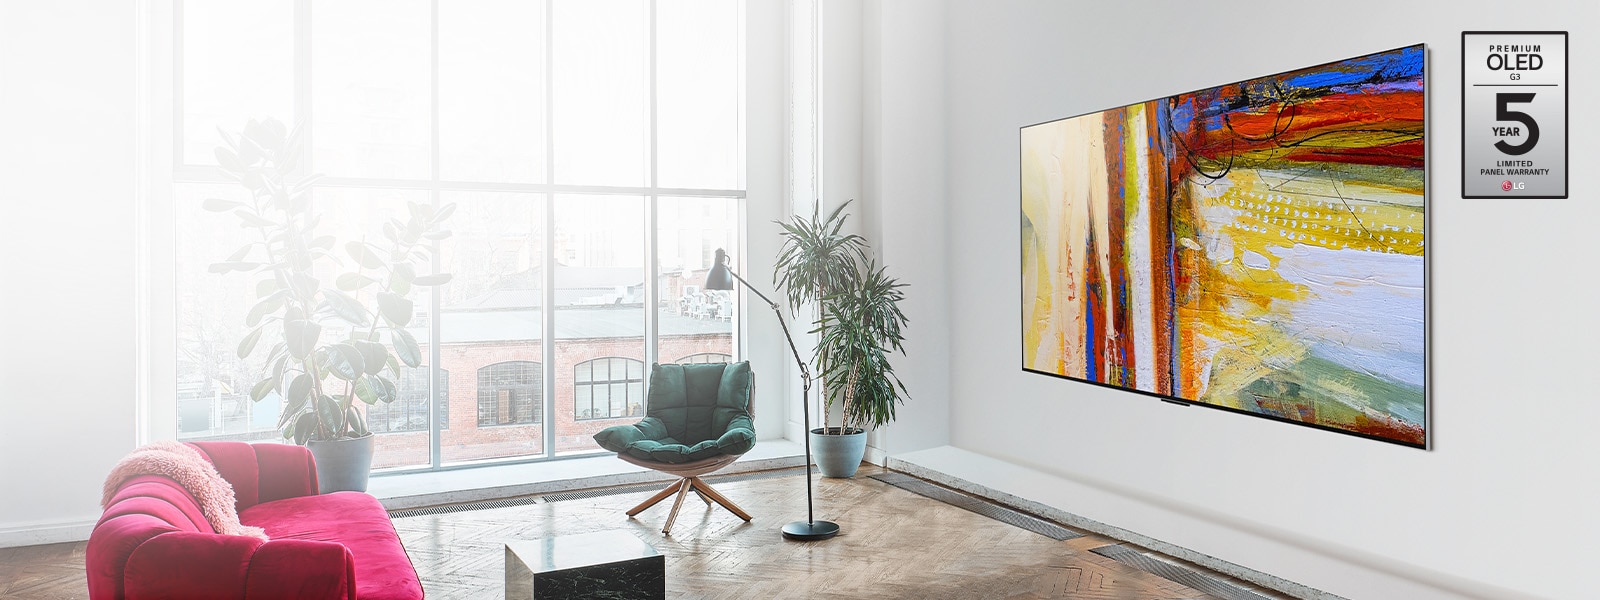 LG OLED G3, rodančio spalvingą abstrakčiojo meno kūrinį ryškiame ir spalvingame kambaryje, vaizdas.